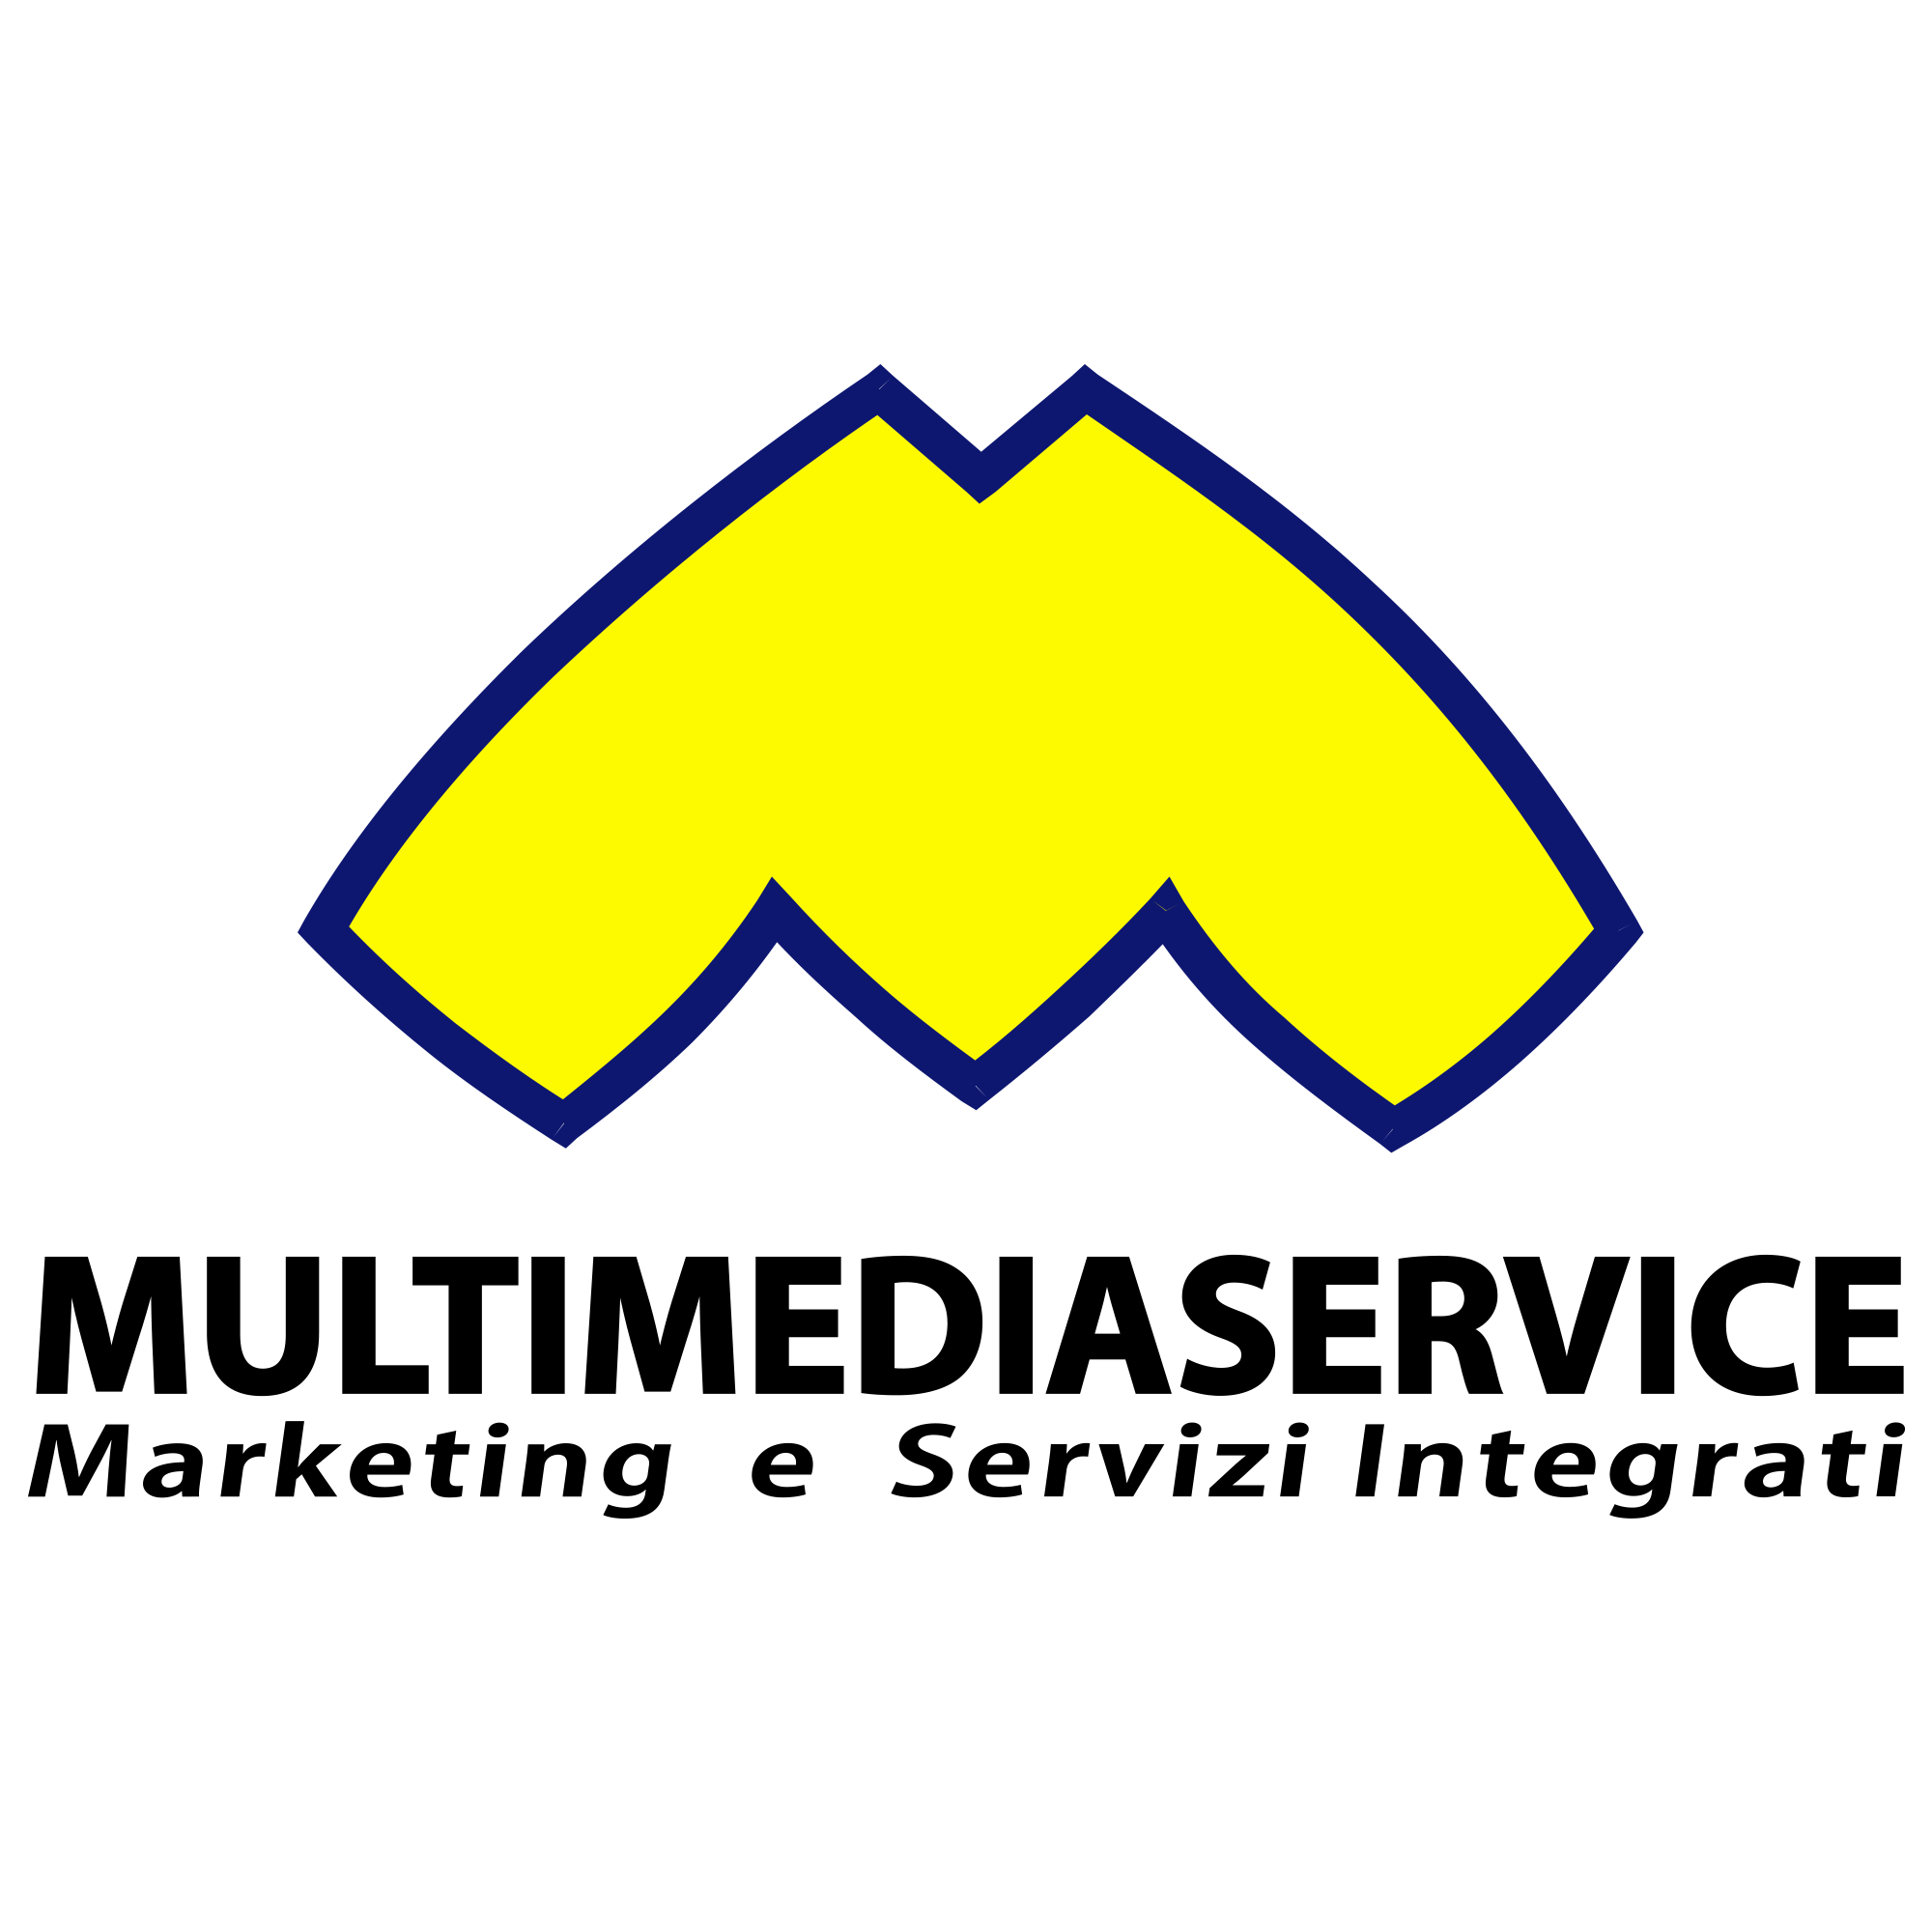 (c) Multimediaservice.it